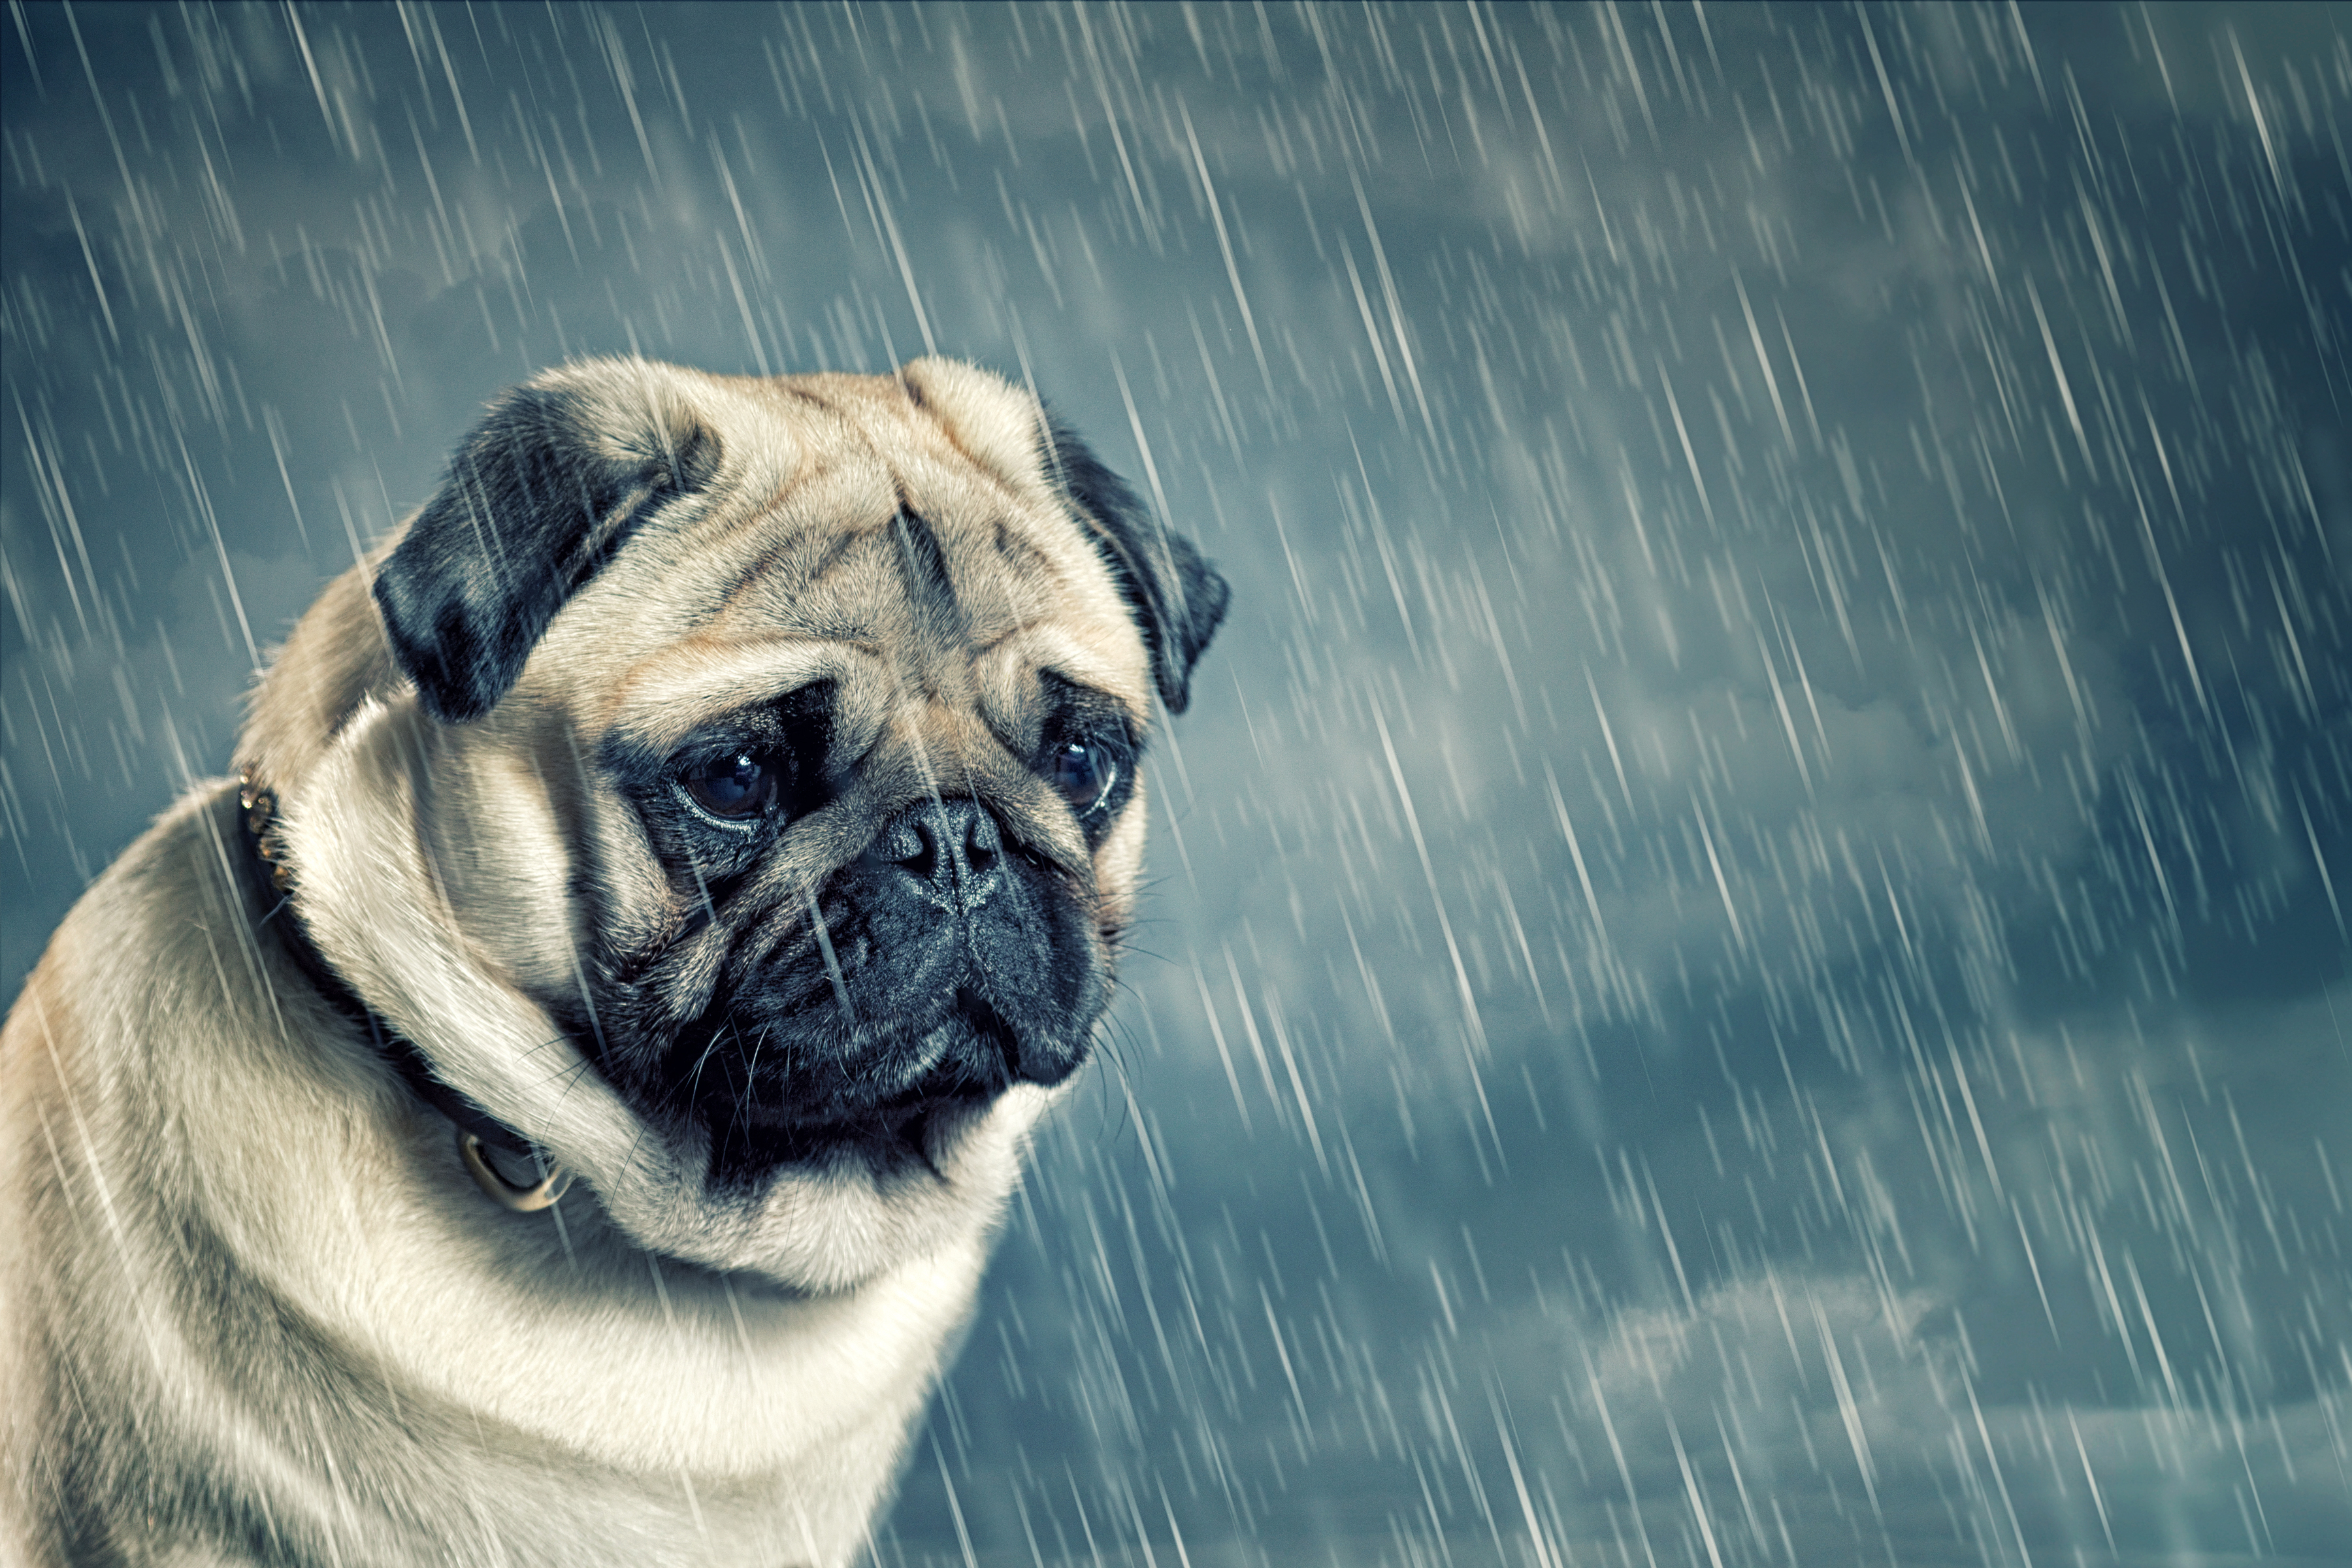 Sad Pug in the Rain HD Wallpapers.